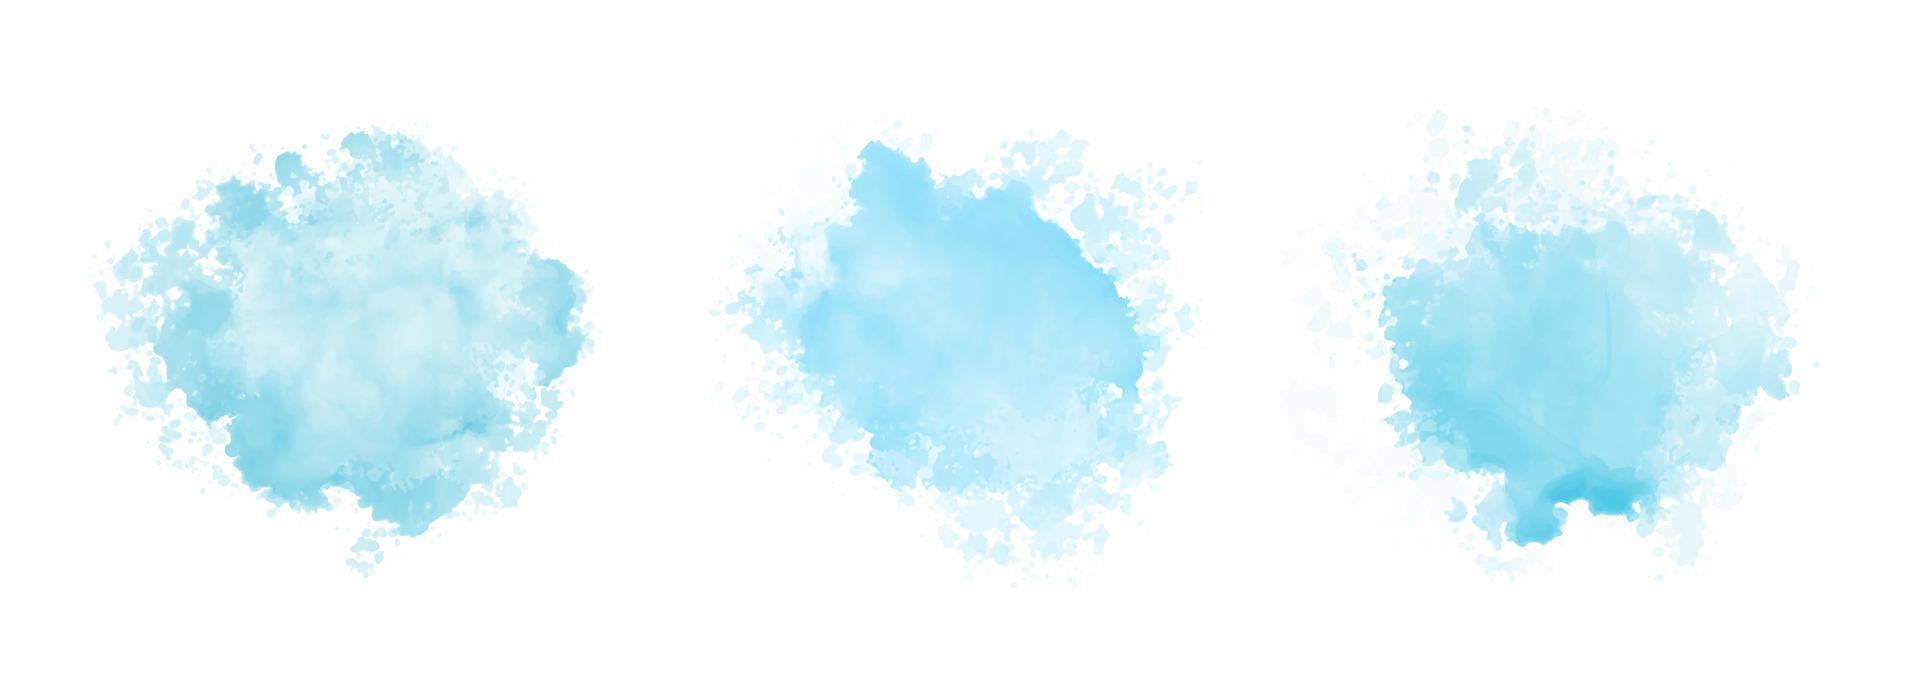 padrão abstrato com nuvens azuis em aquarela sobre fundo branco. textura de respingo impetuoso de água aquarela ciano vetor